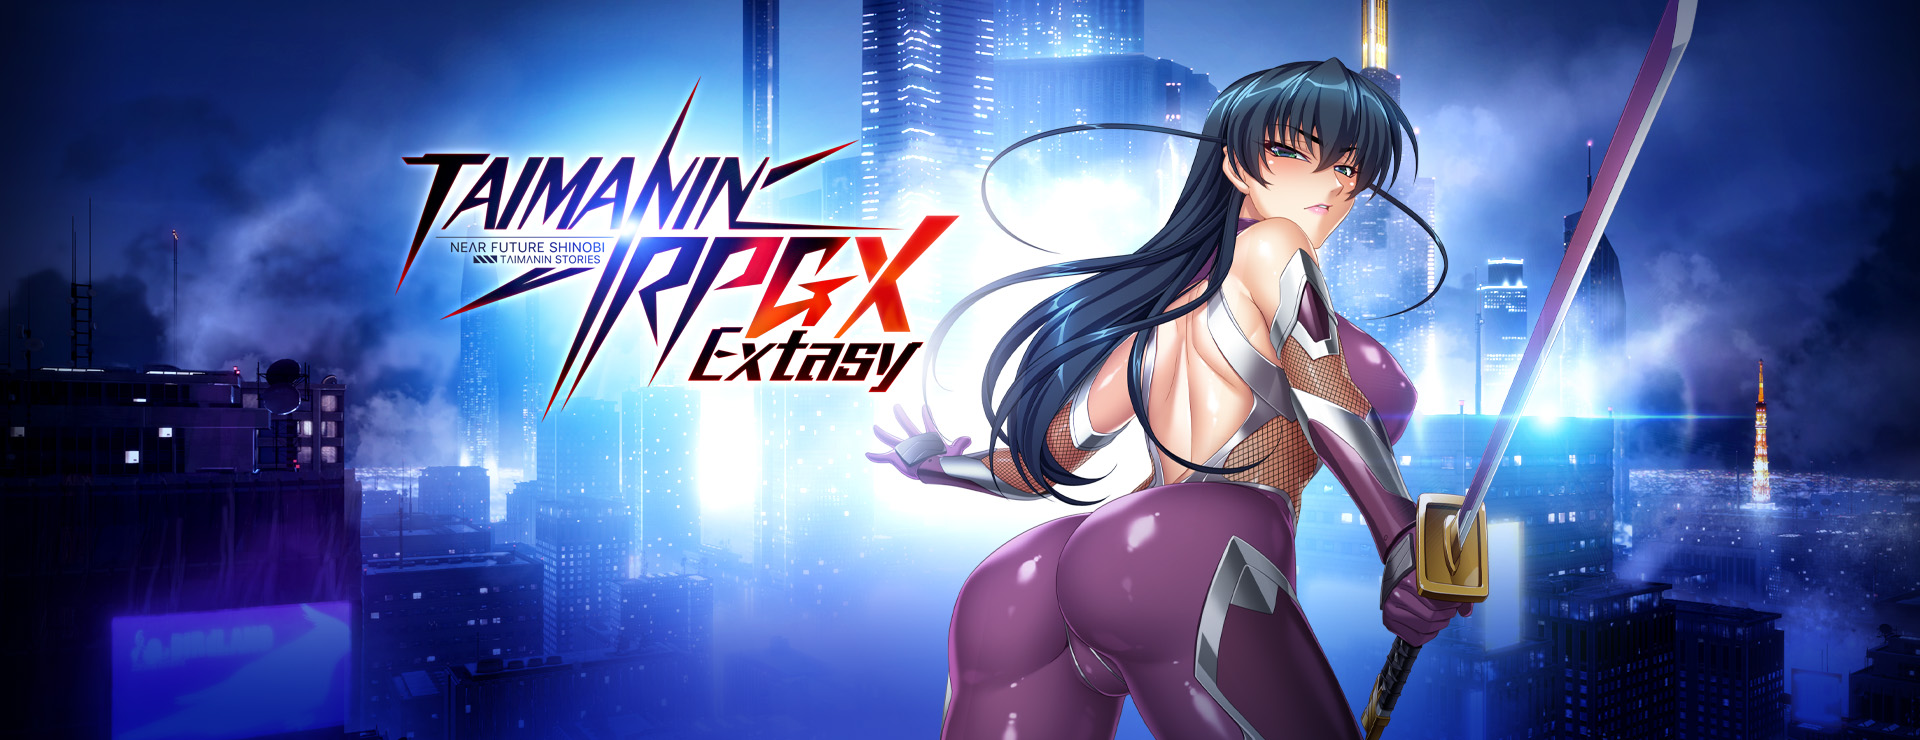 Taimanin RPGX Extasy - RPG Game